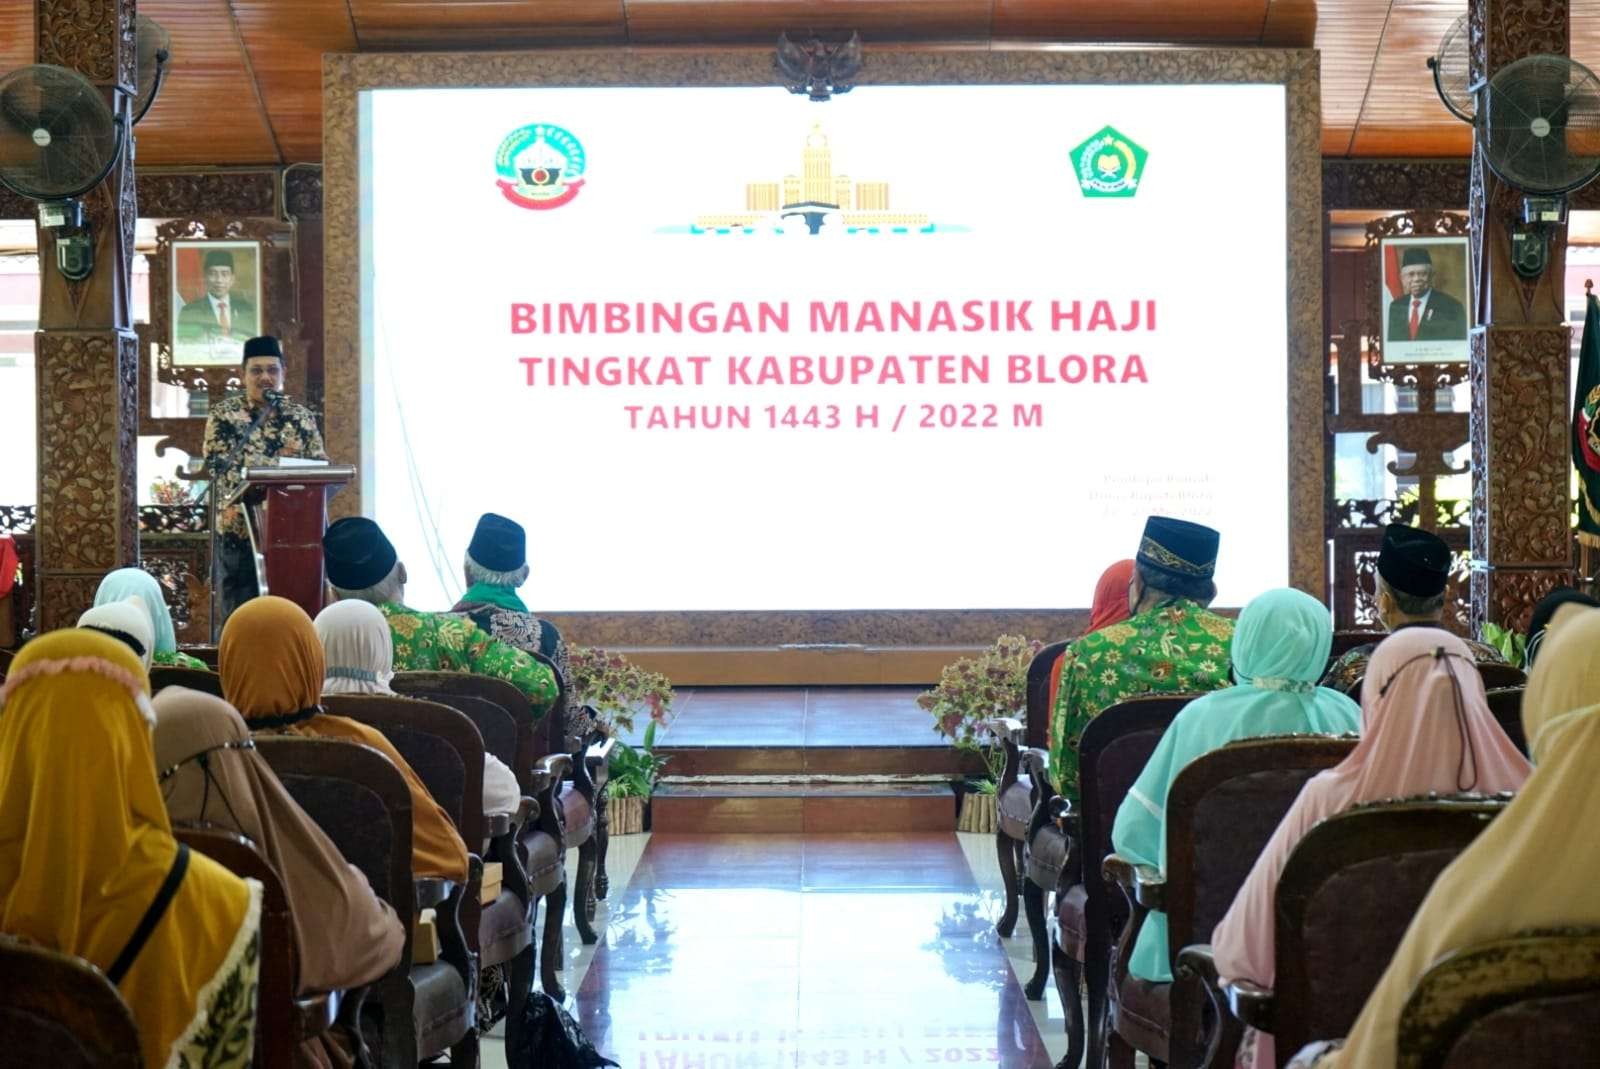 Jemaah haji asal Blora Jawa Tengah saat mengikuti bimbingan manasik haji di Pendopo Rumah Dinas Bupati Blora, Jumat, 27 Mei 2022. (Foto: Ahmad Sampurno/Ngopibareng.id)